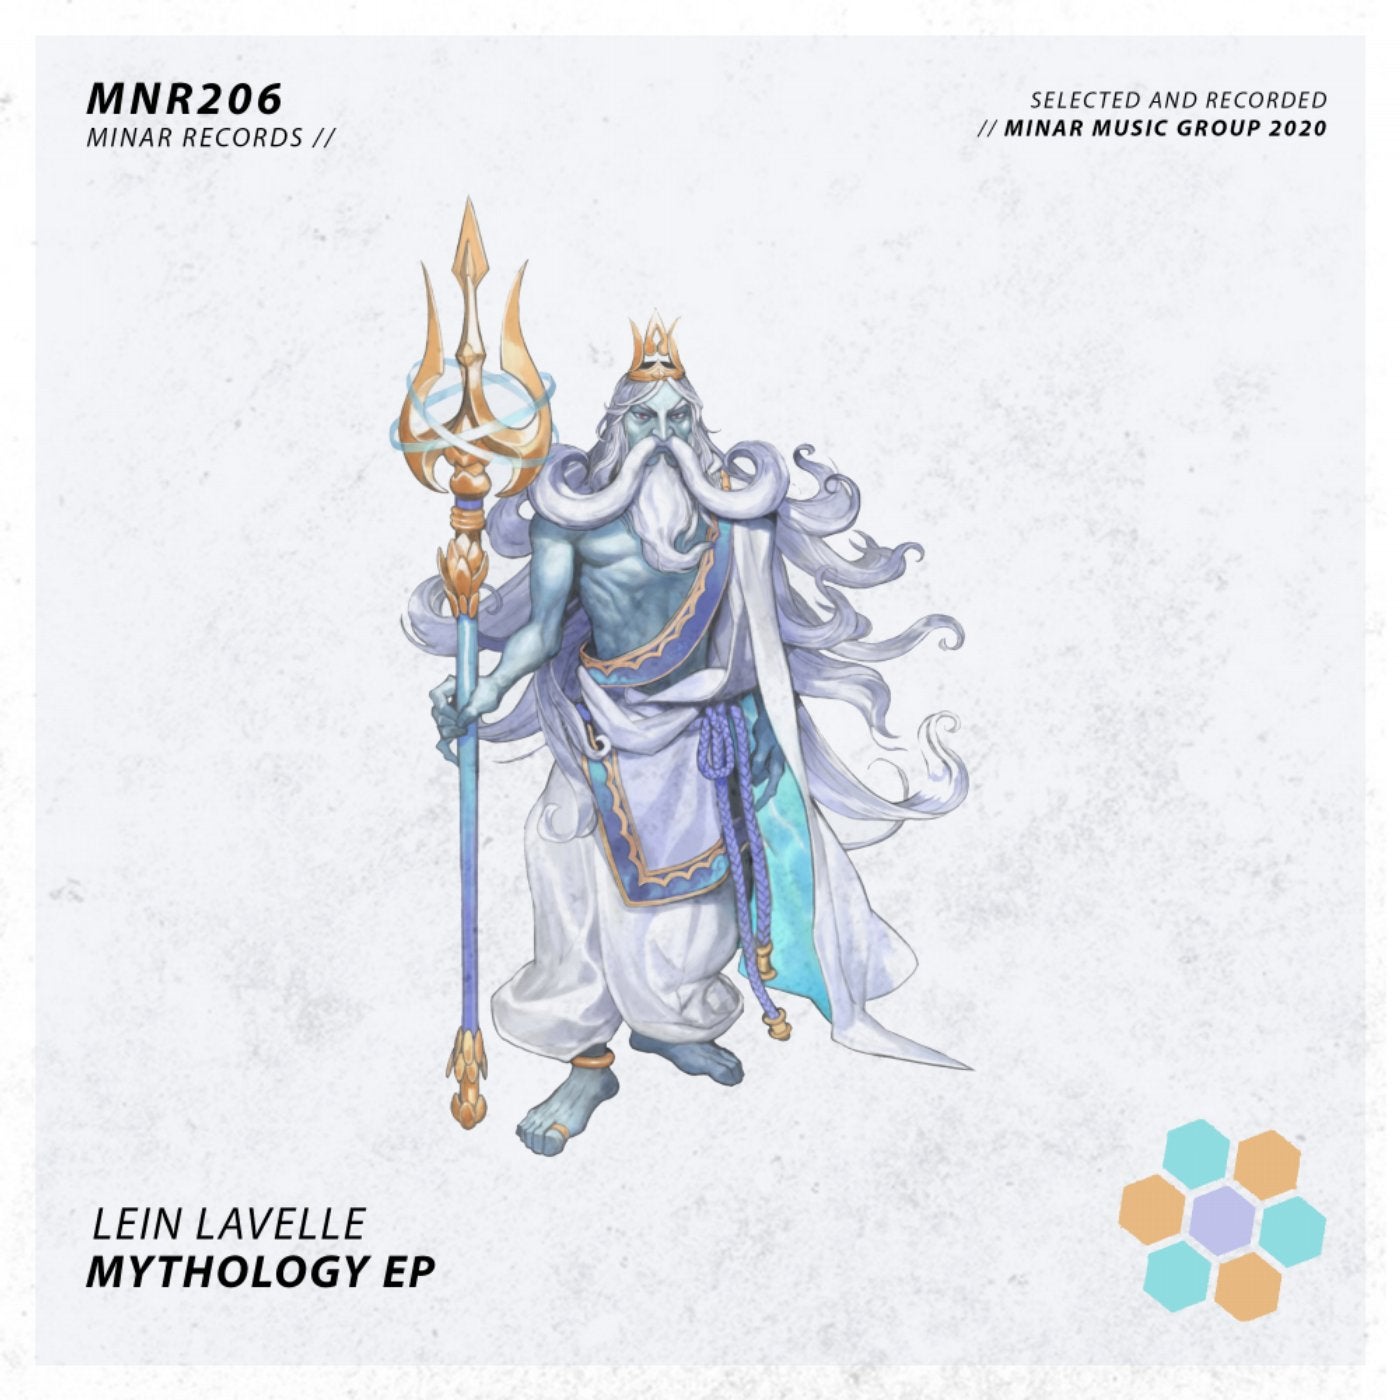 Mythology EP